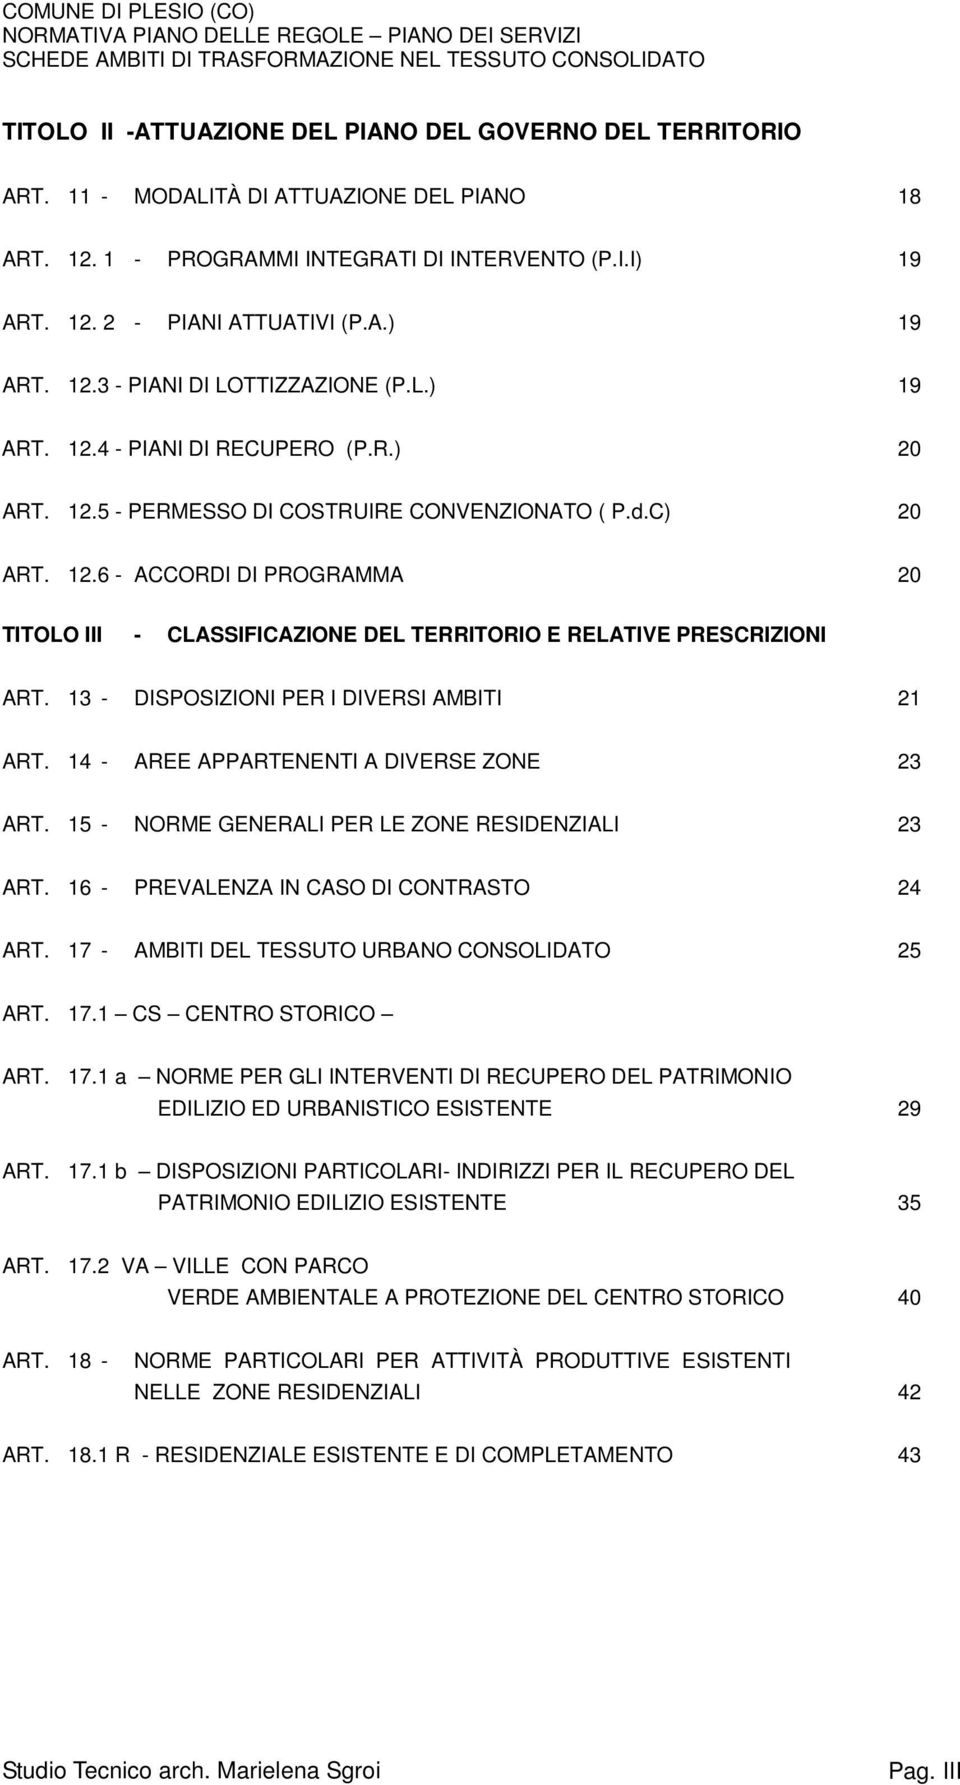 .. 20 TITOLO III - CLASSIFICAZIONE DEL TERRITORIO E RELATIVE PRESCRIZIONI ART. 13 - DISPOSIZIONI PER I DIVERSI AMBITI... 21 ART. 14 - AREE APPARTENENTI A DIVERSE ZONE... 23 ART.